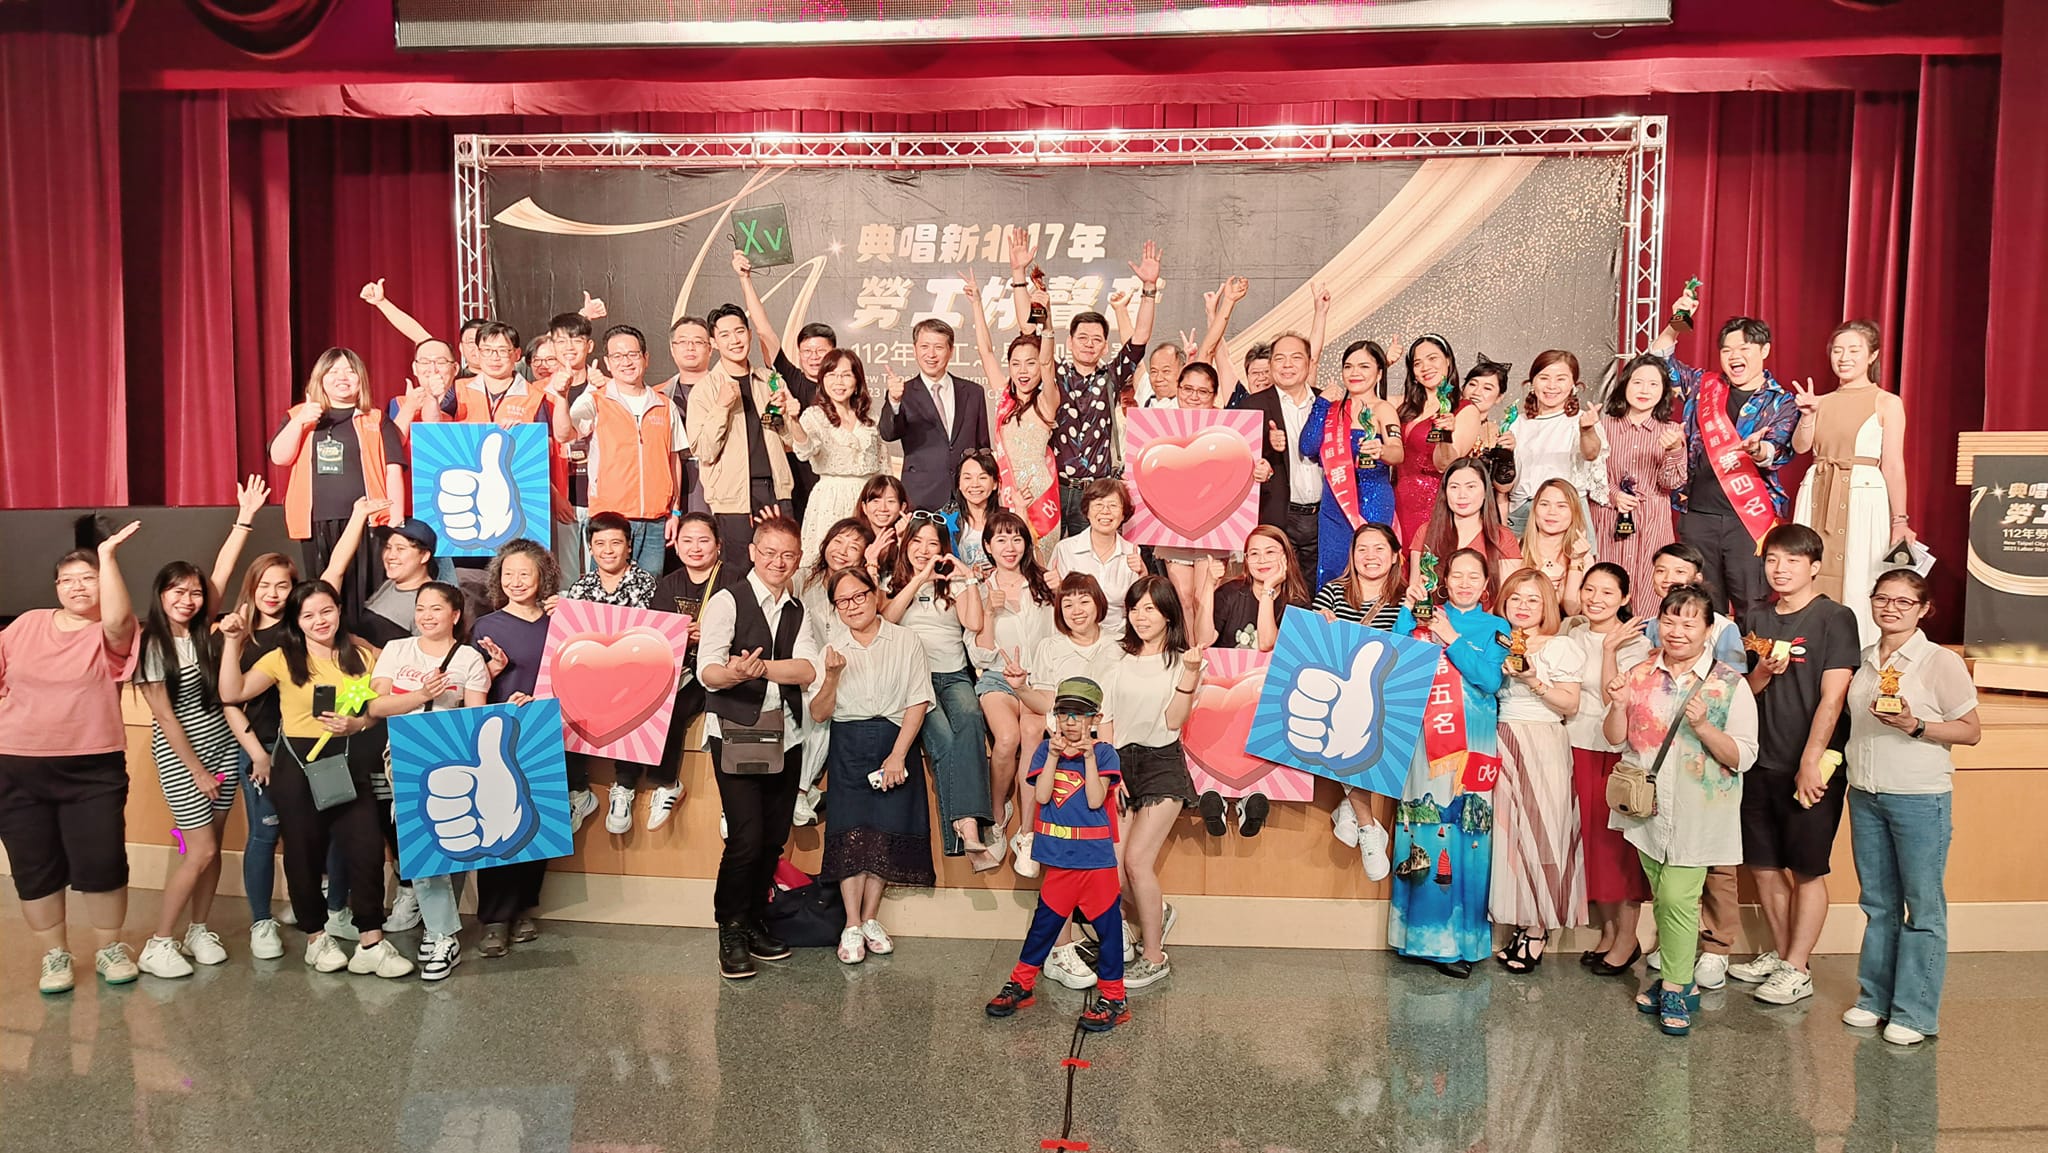 Dinas Tenaga Kerja Kota New Taipei mengadakan kompetisi menyanyi, menarik ratusan pekerja mingran untuk berpartisipasi. (Sumber foto : Menteri Ketenagakerjaan)